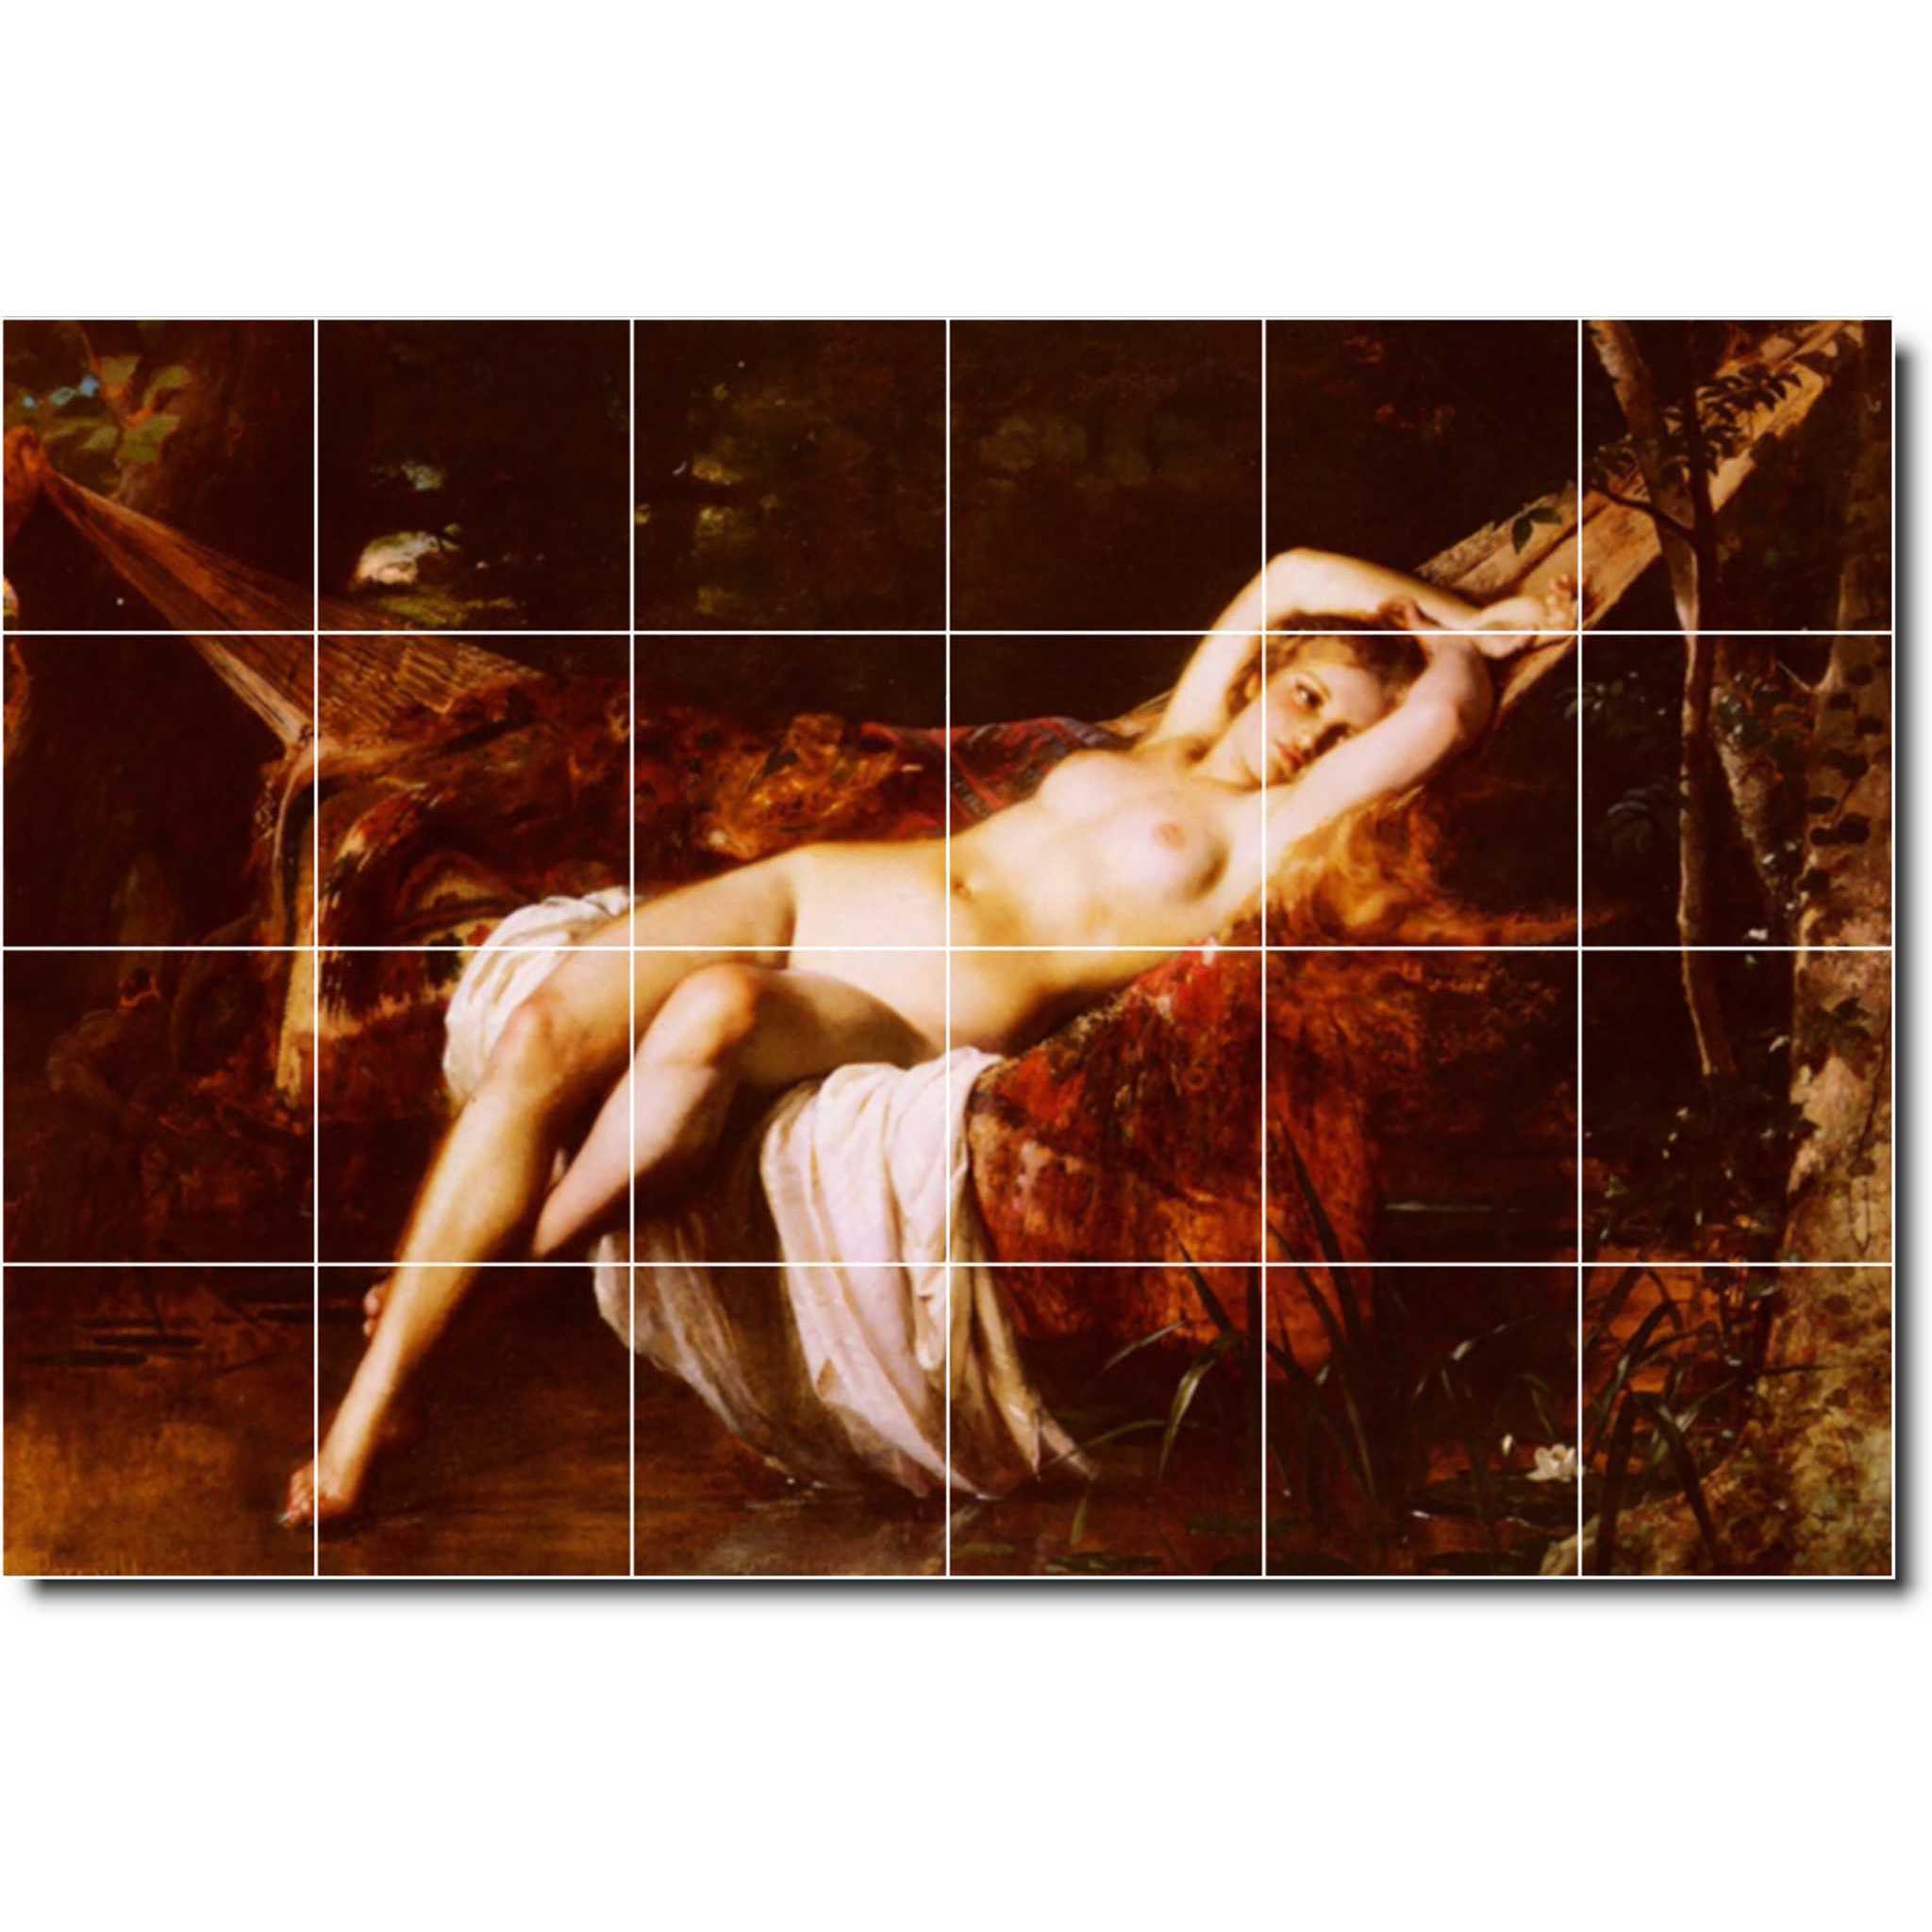 leon perrault nude painting ceramic tile mural p06684